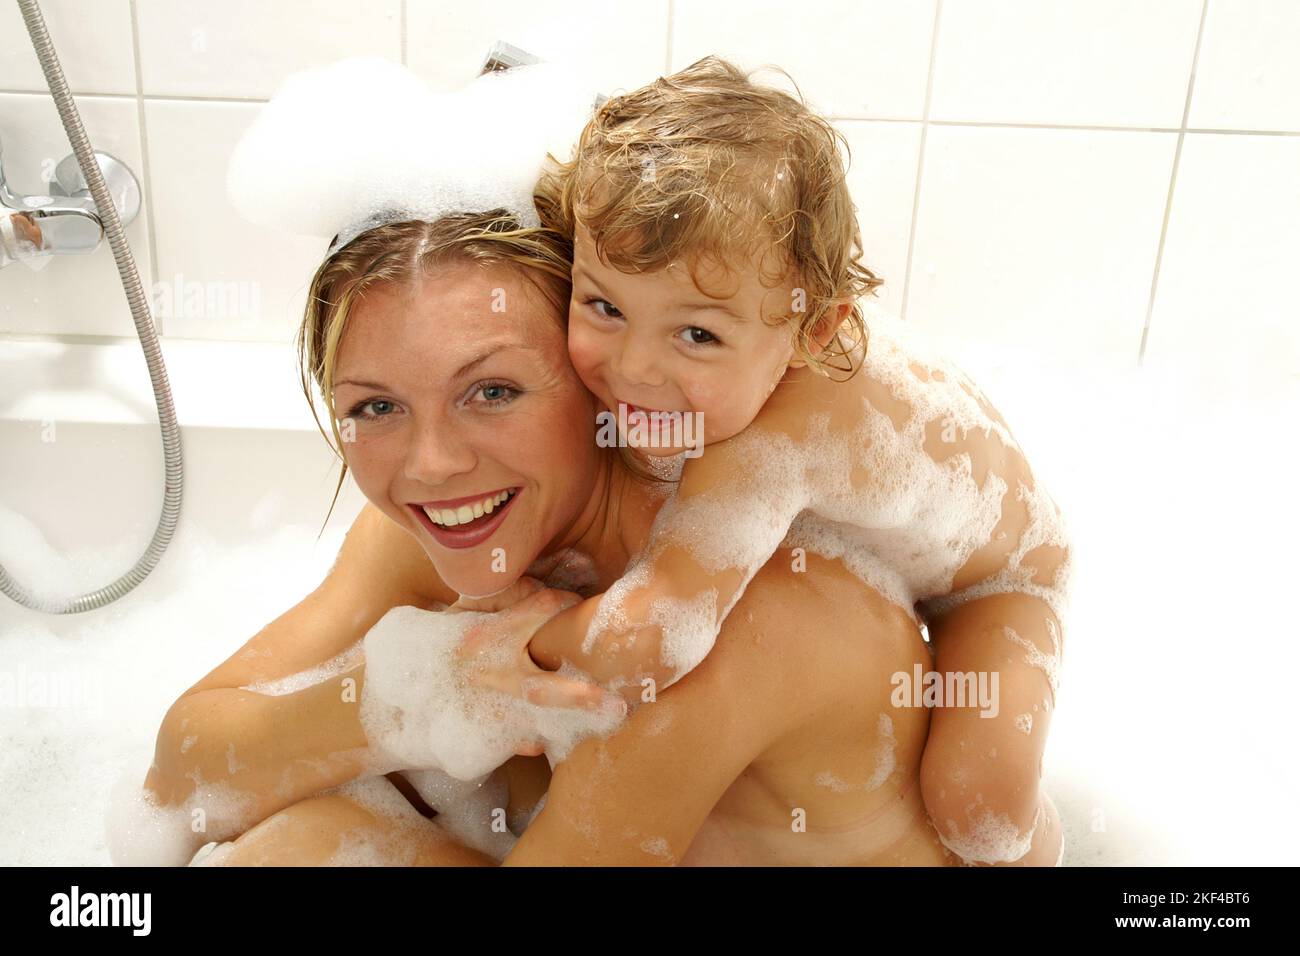 Mutter und kleiner Sohn haben Spass in der Badewanne, Blond, Blonde, Blondine, Frau, 25, 30, Sohn, 3, 4, Jahre, Stock Photo